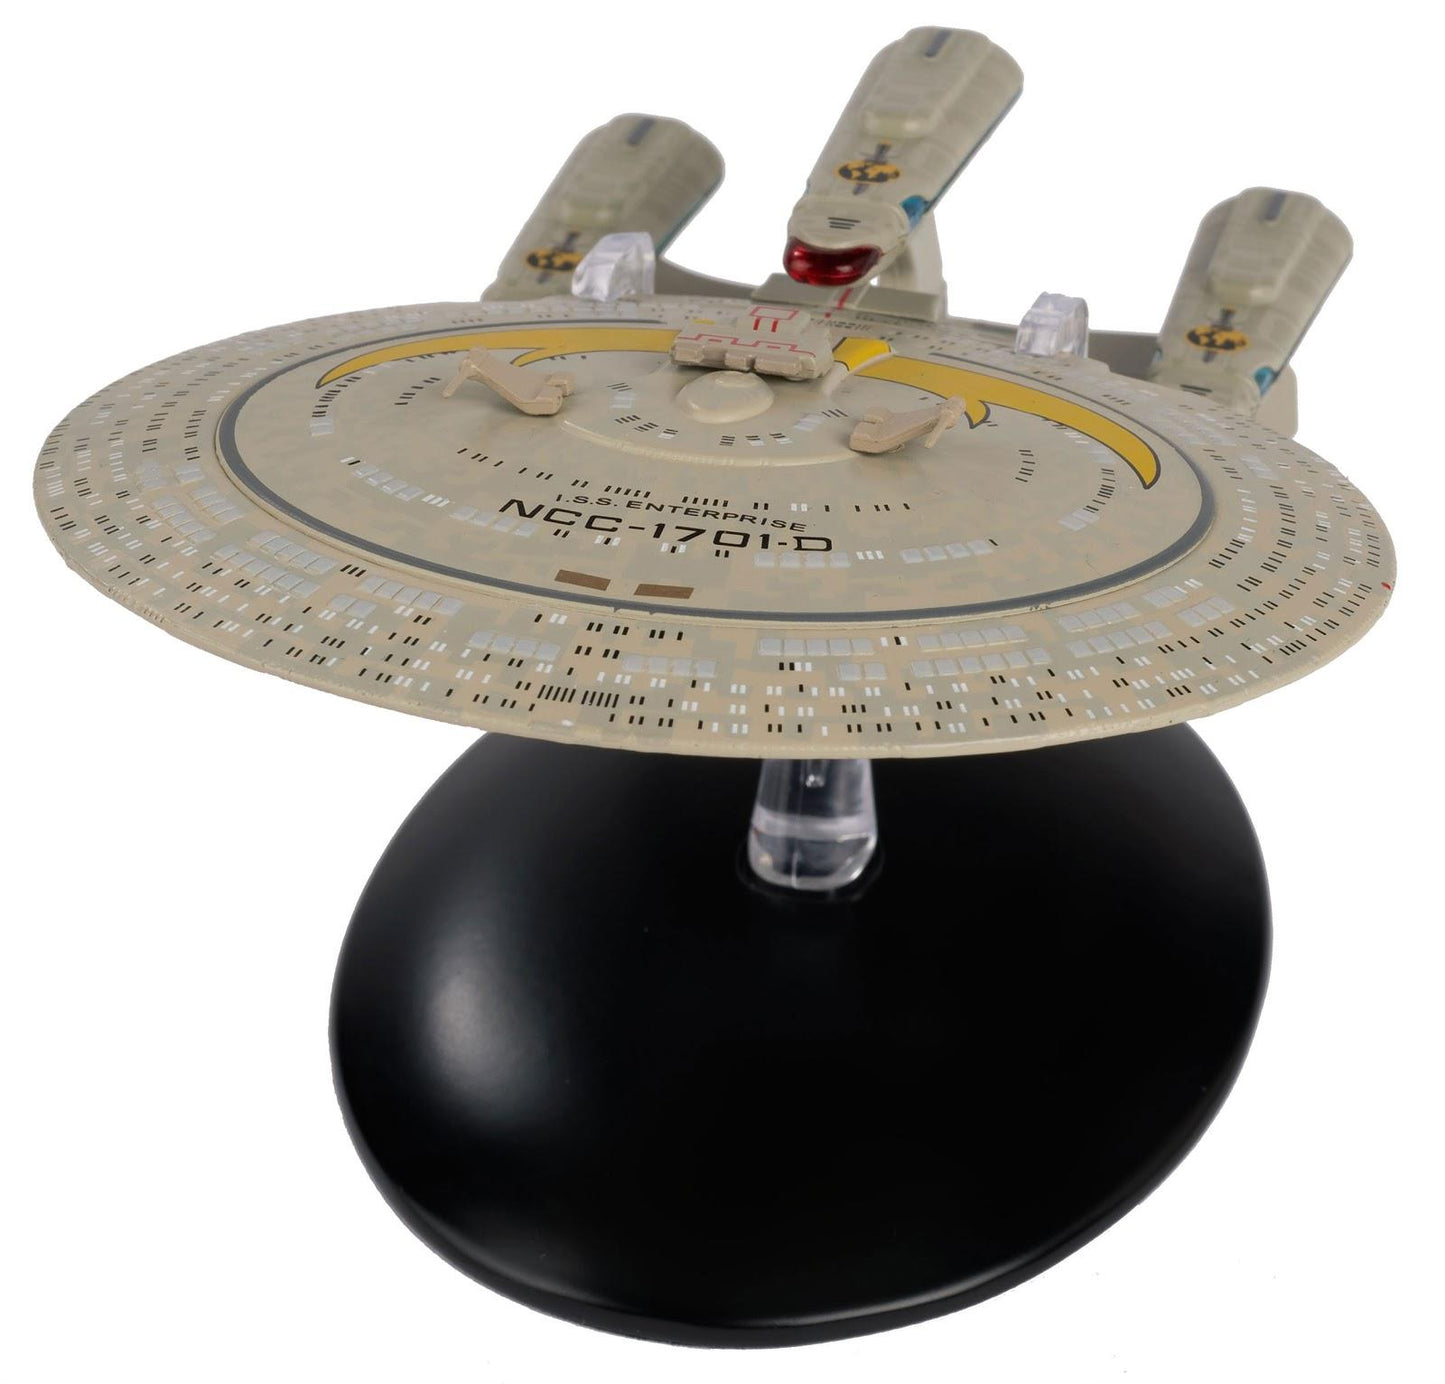 USS Enterprise Star Trek, Enterprise D